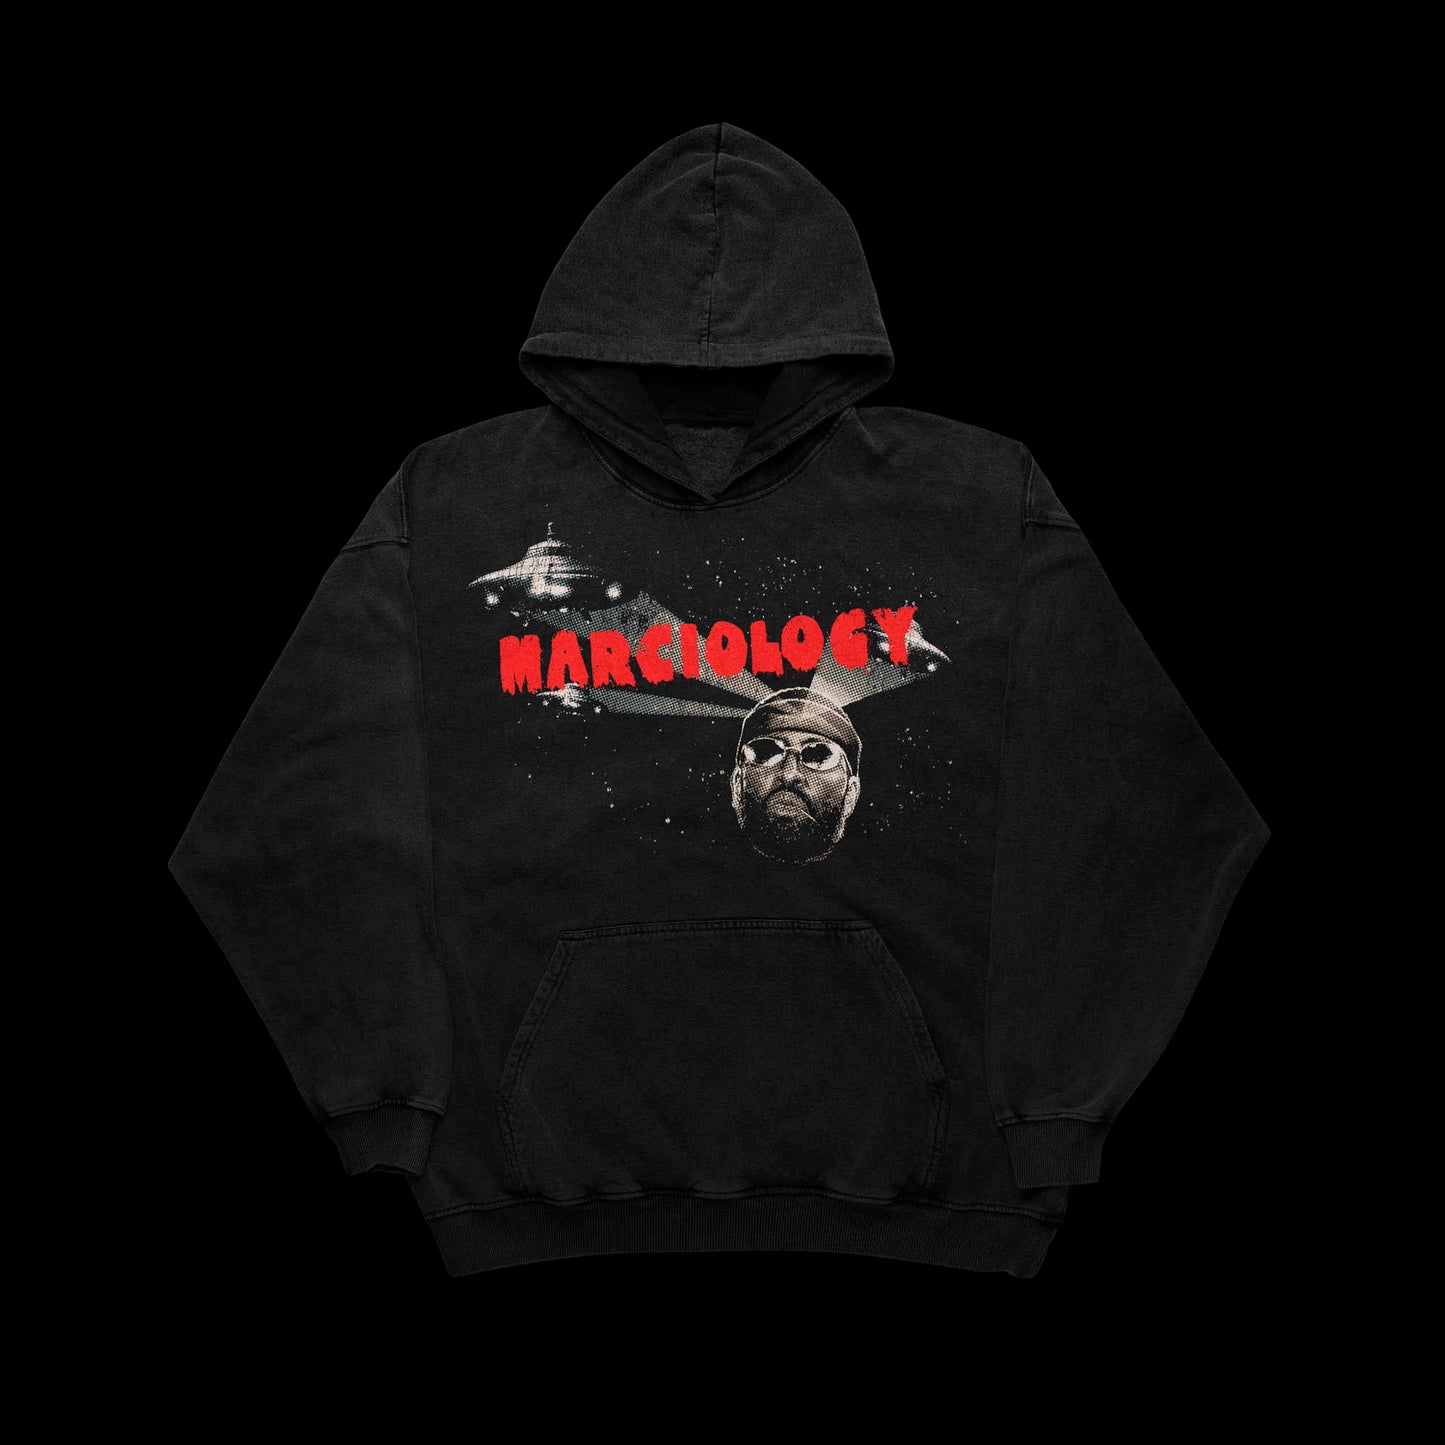 Marciology (Black Hoodie)